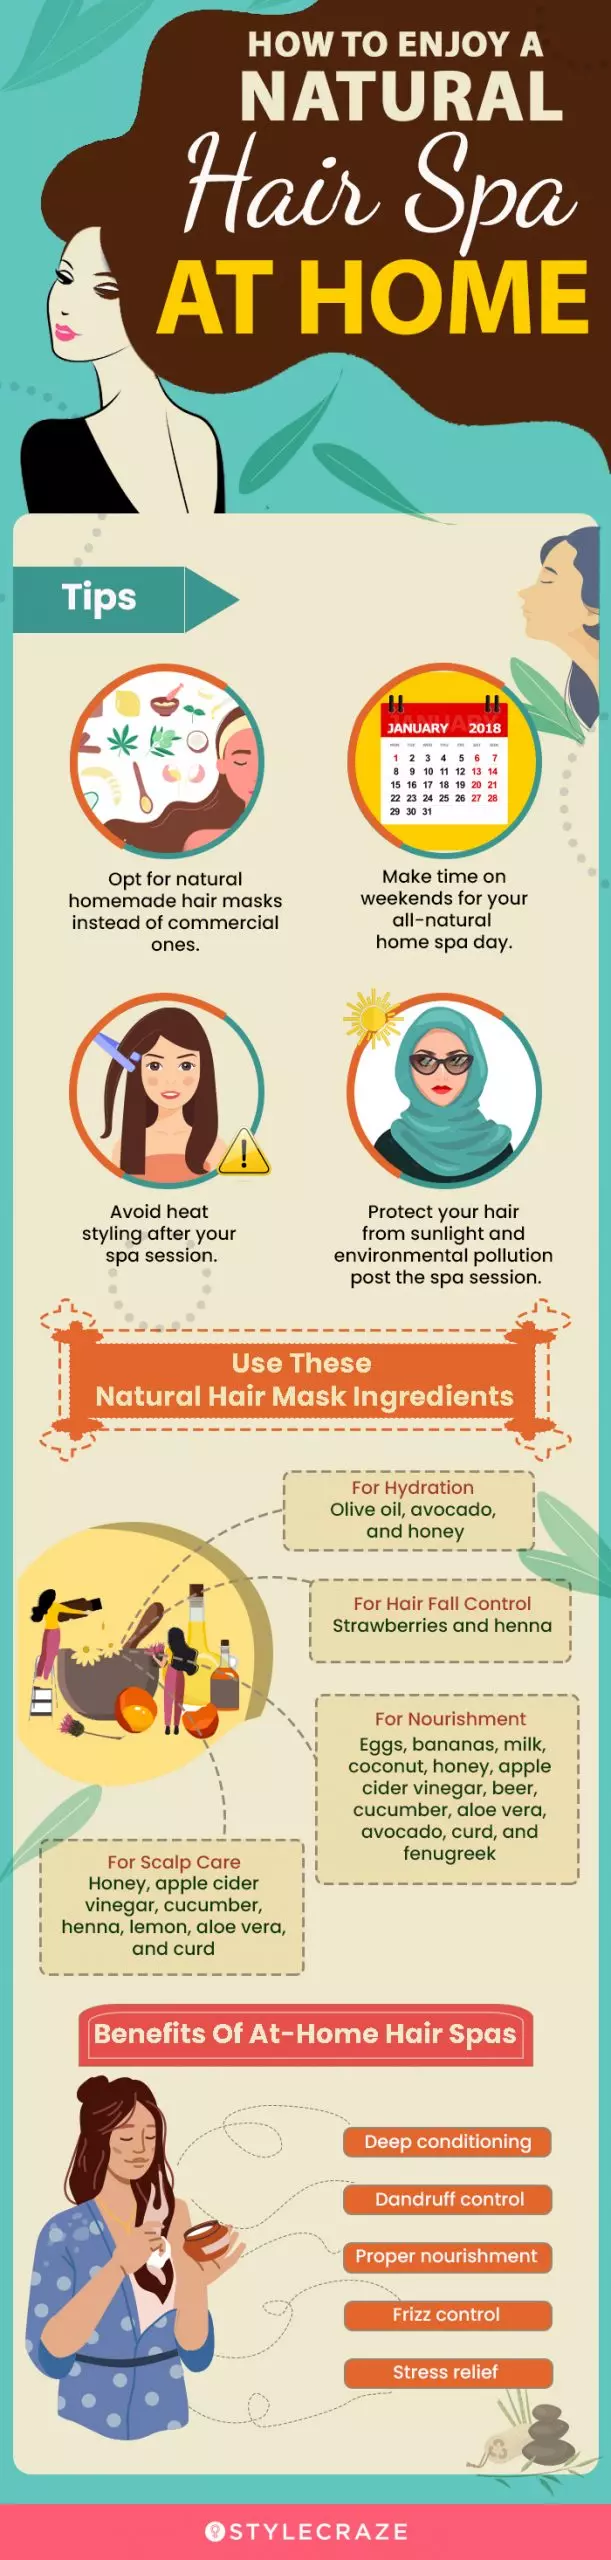 enjoying a natural hair spa at home (infographic)